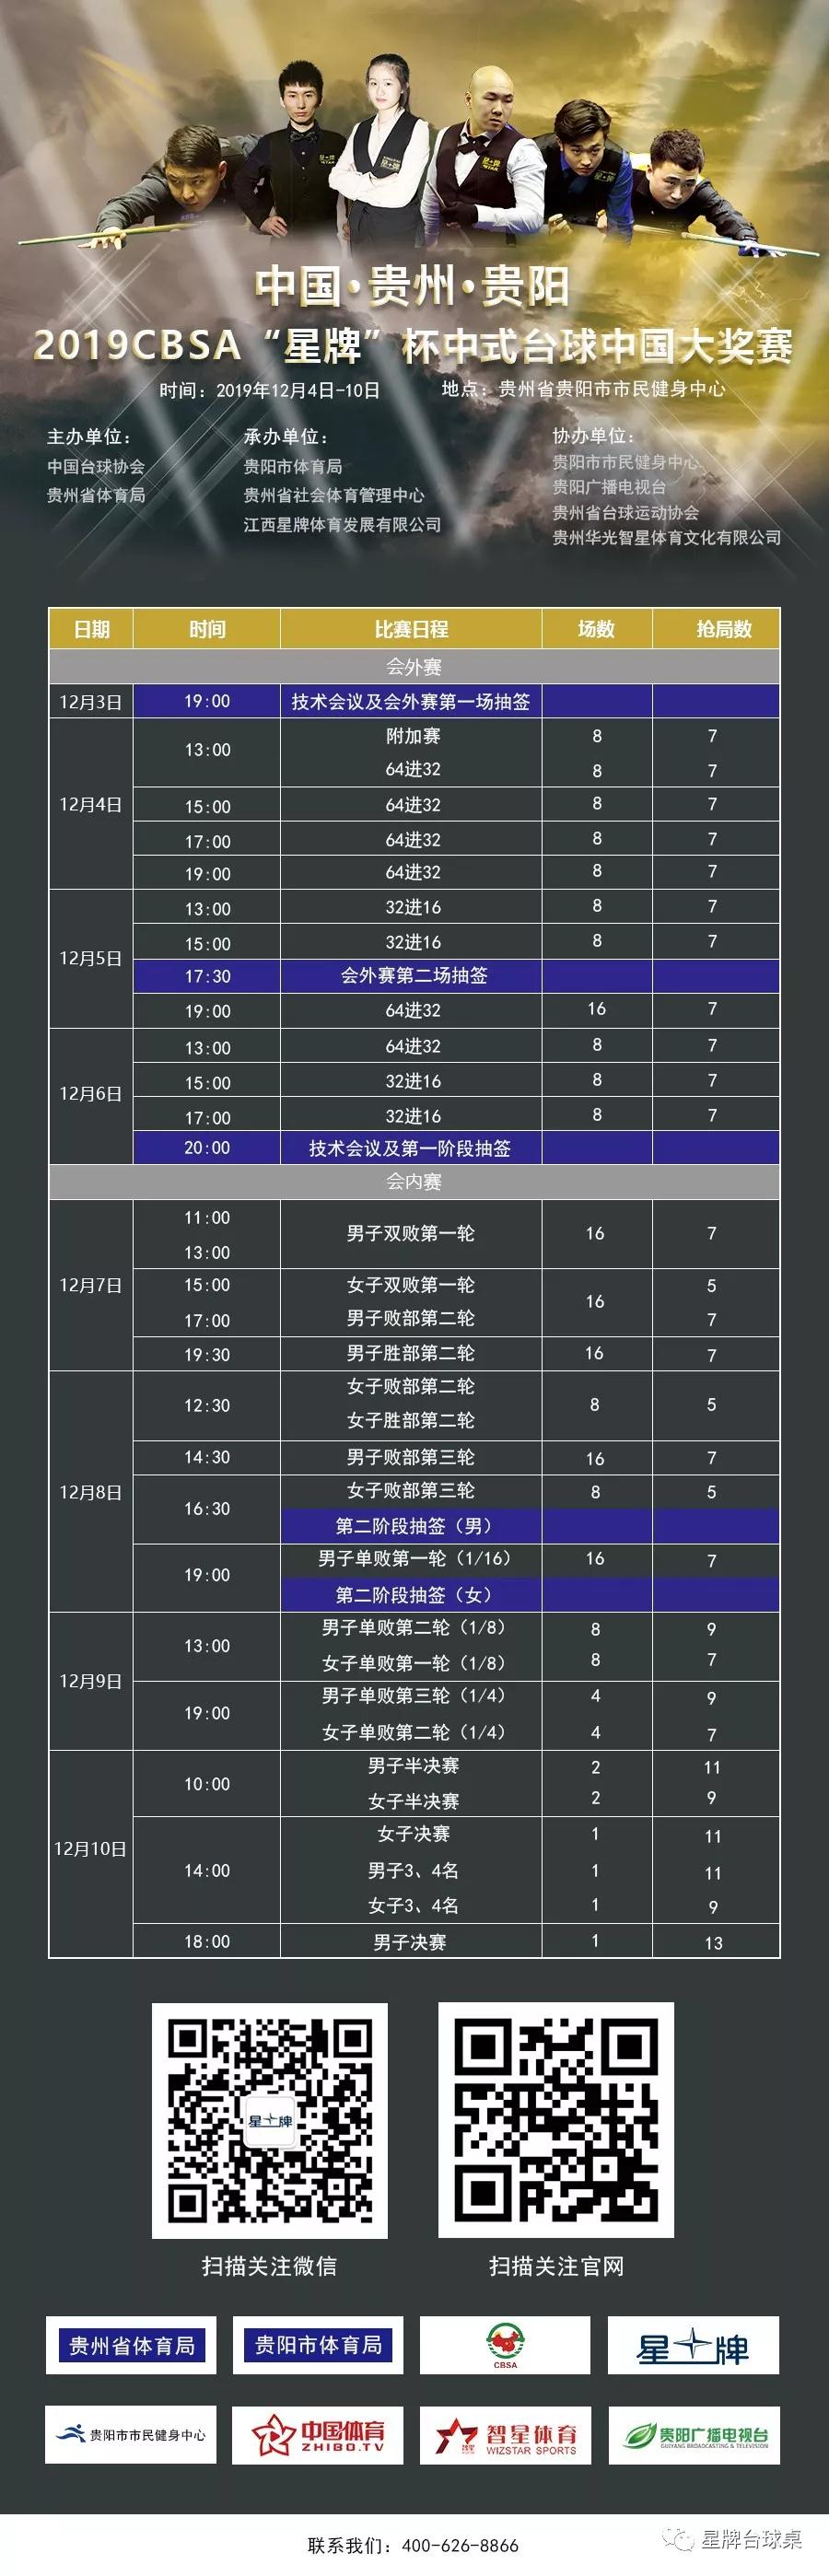 贵阳2019CBSA“kok娱乐平台
”杯中式台球中国大奖赛赛程时间表